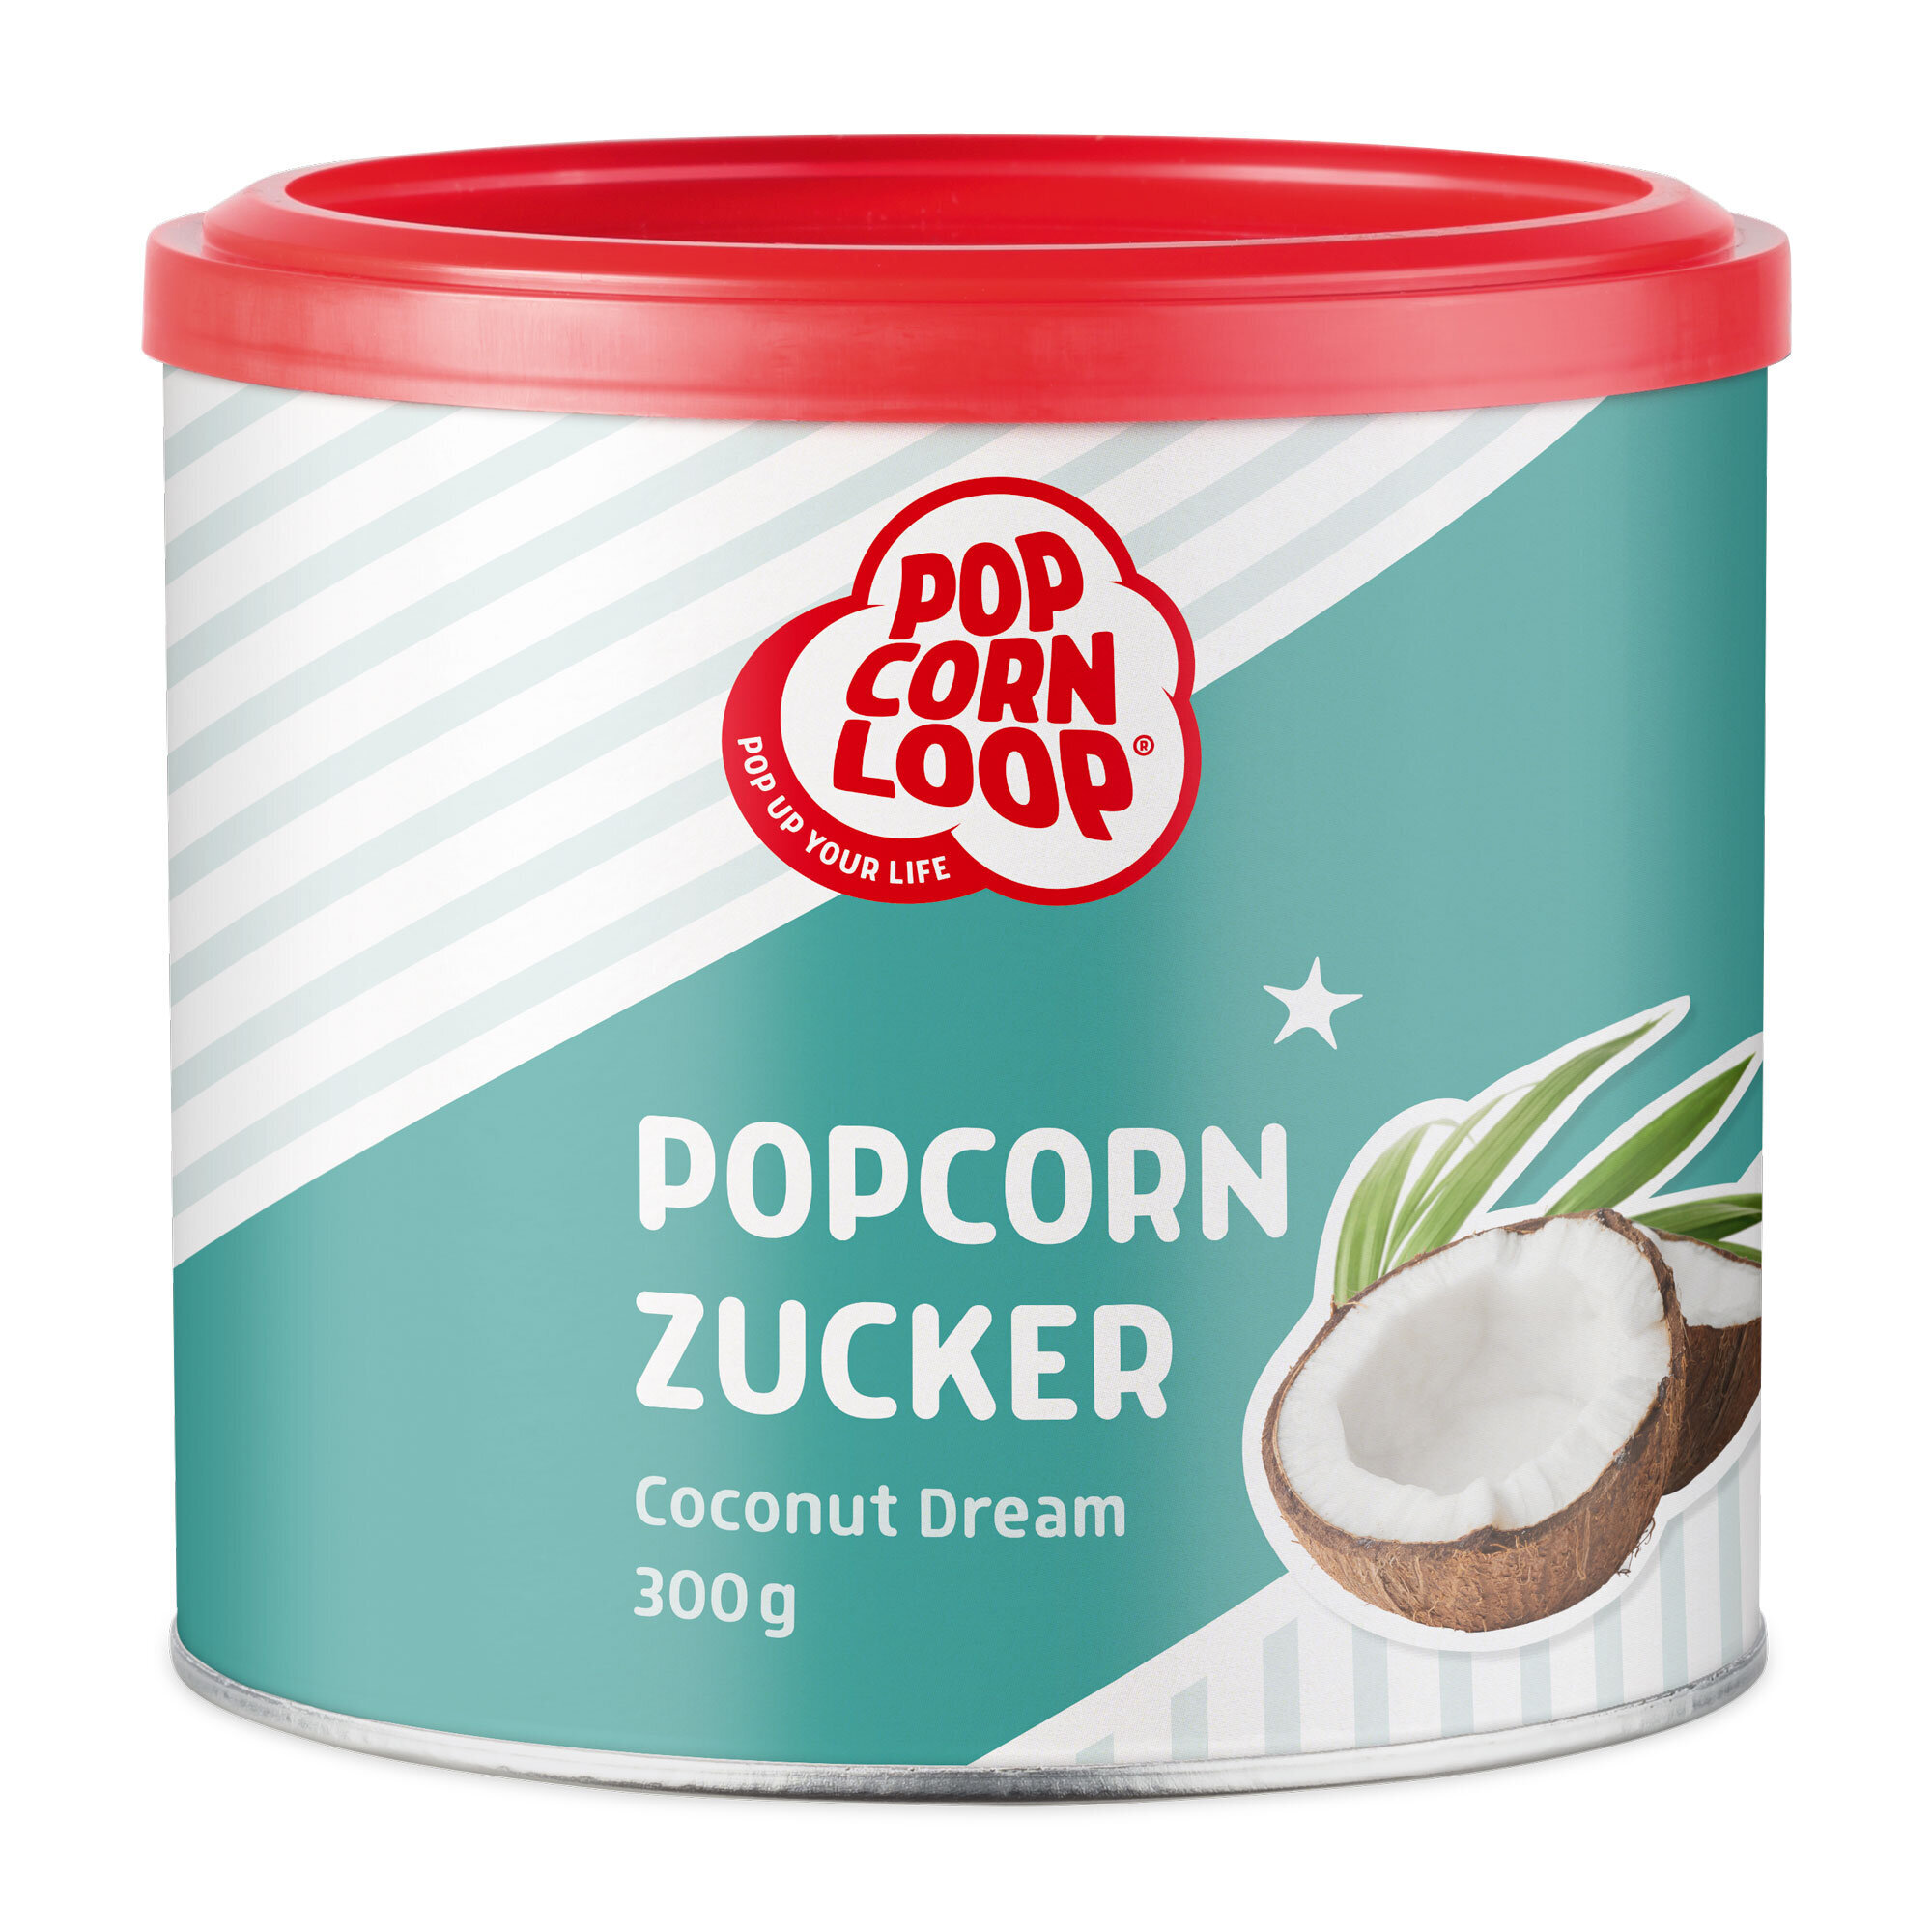 Kundenfoto 20 Popcornloop GmbH